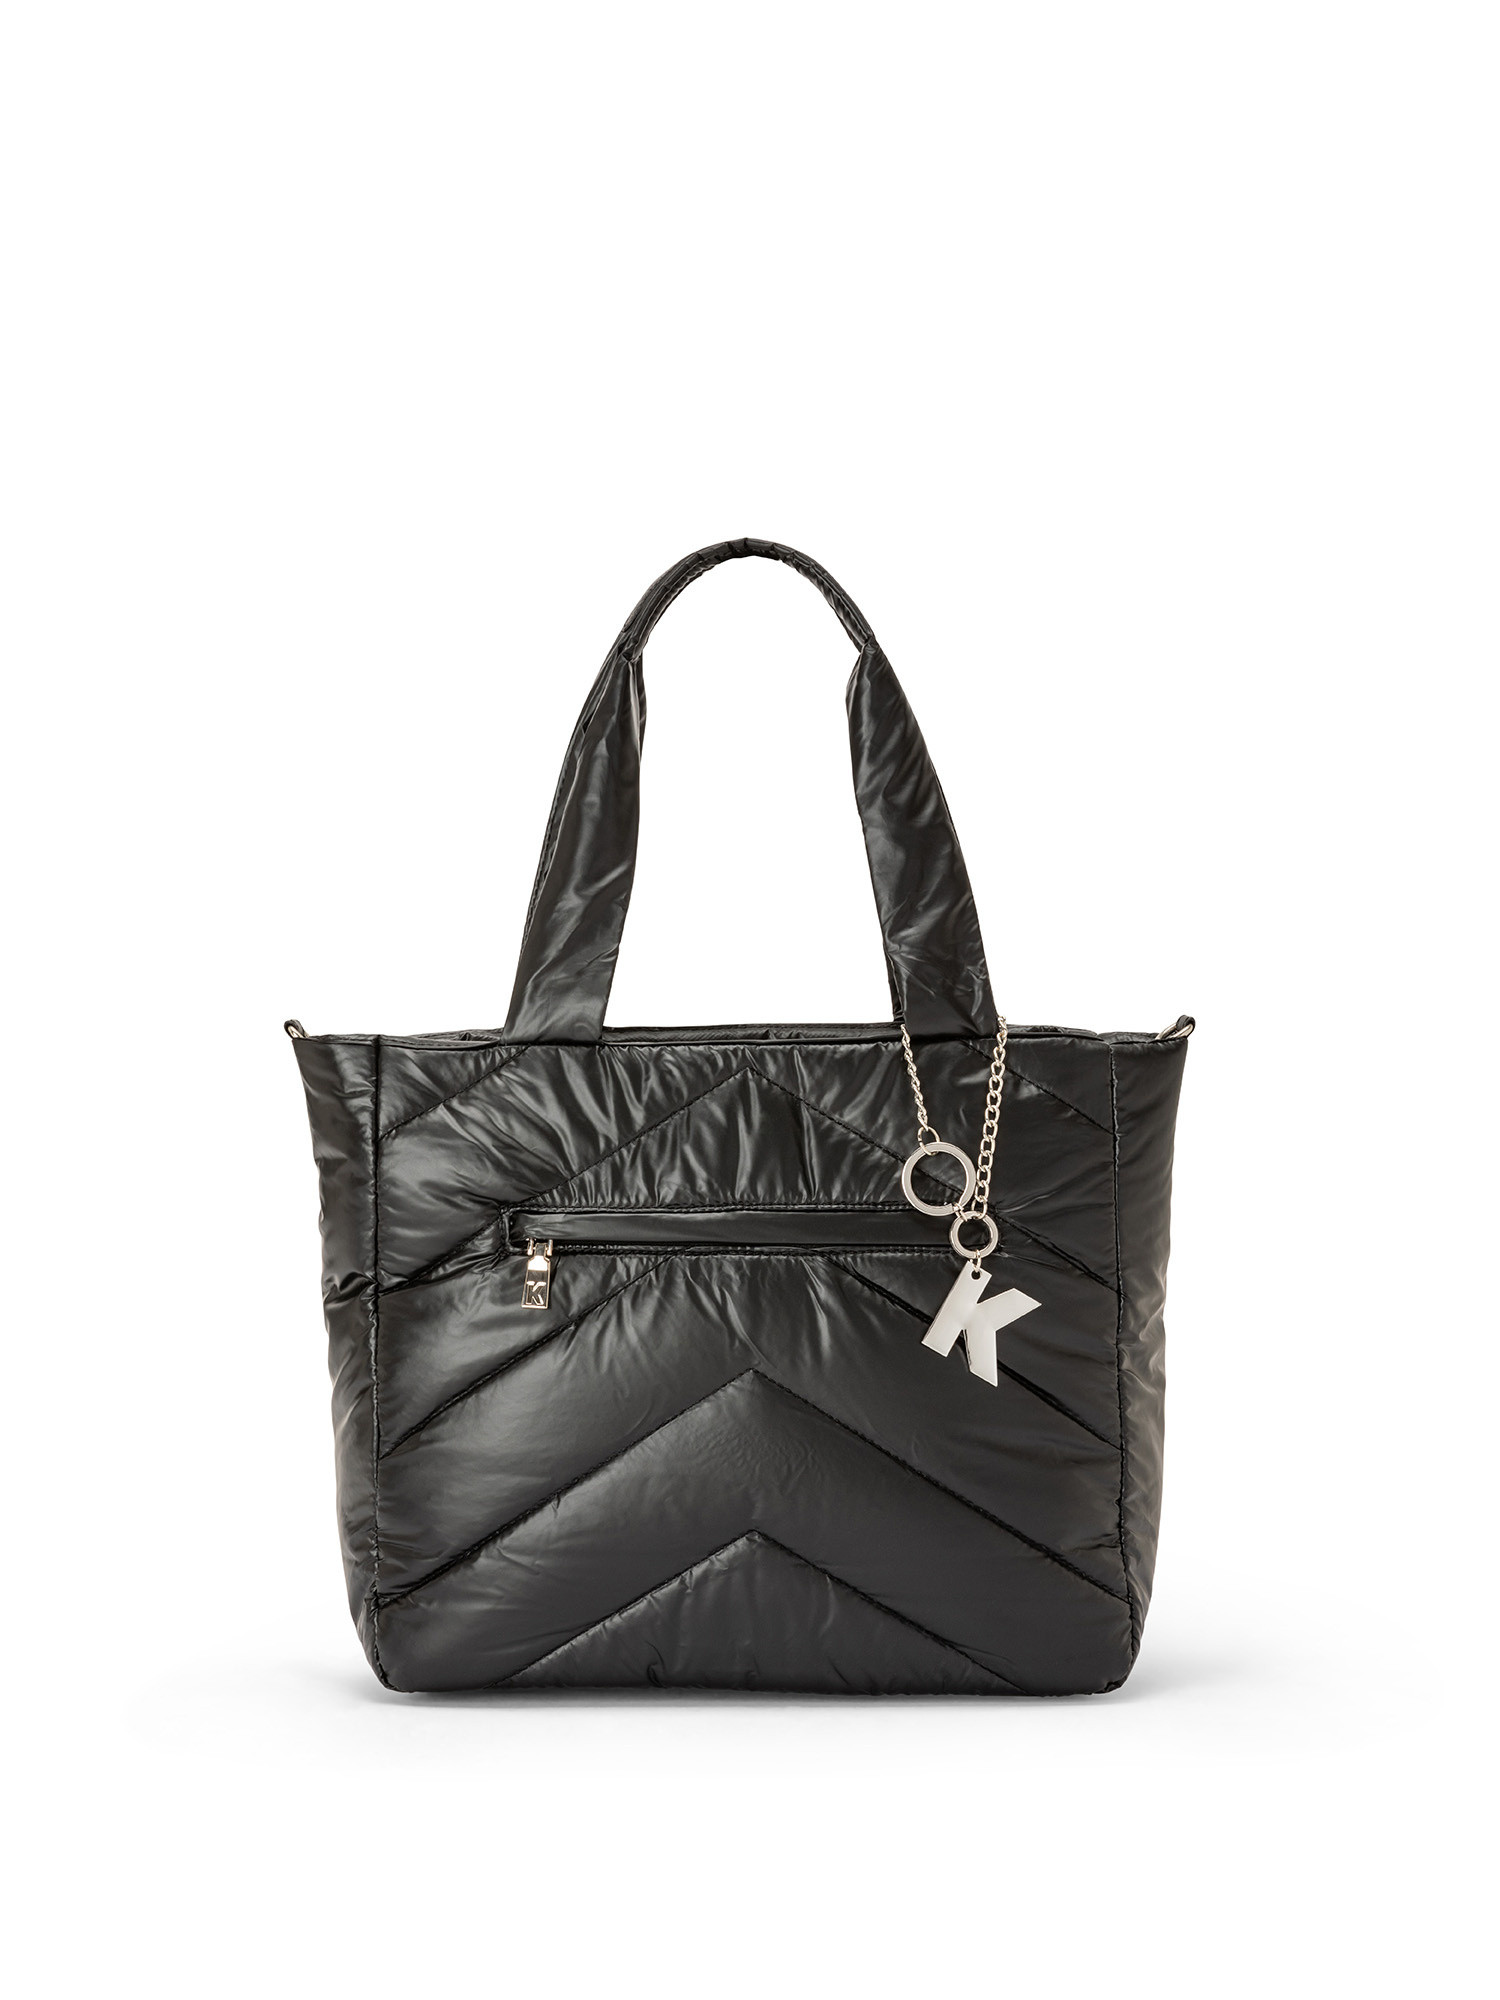 Koan - Shopping bag in nylon, Nero, large image number 0